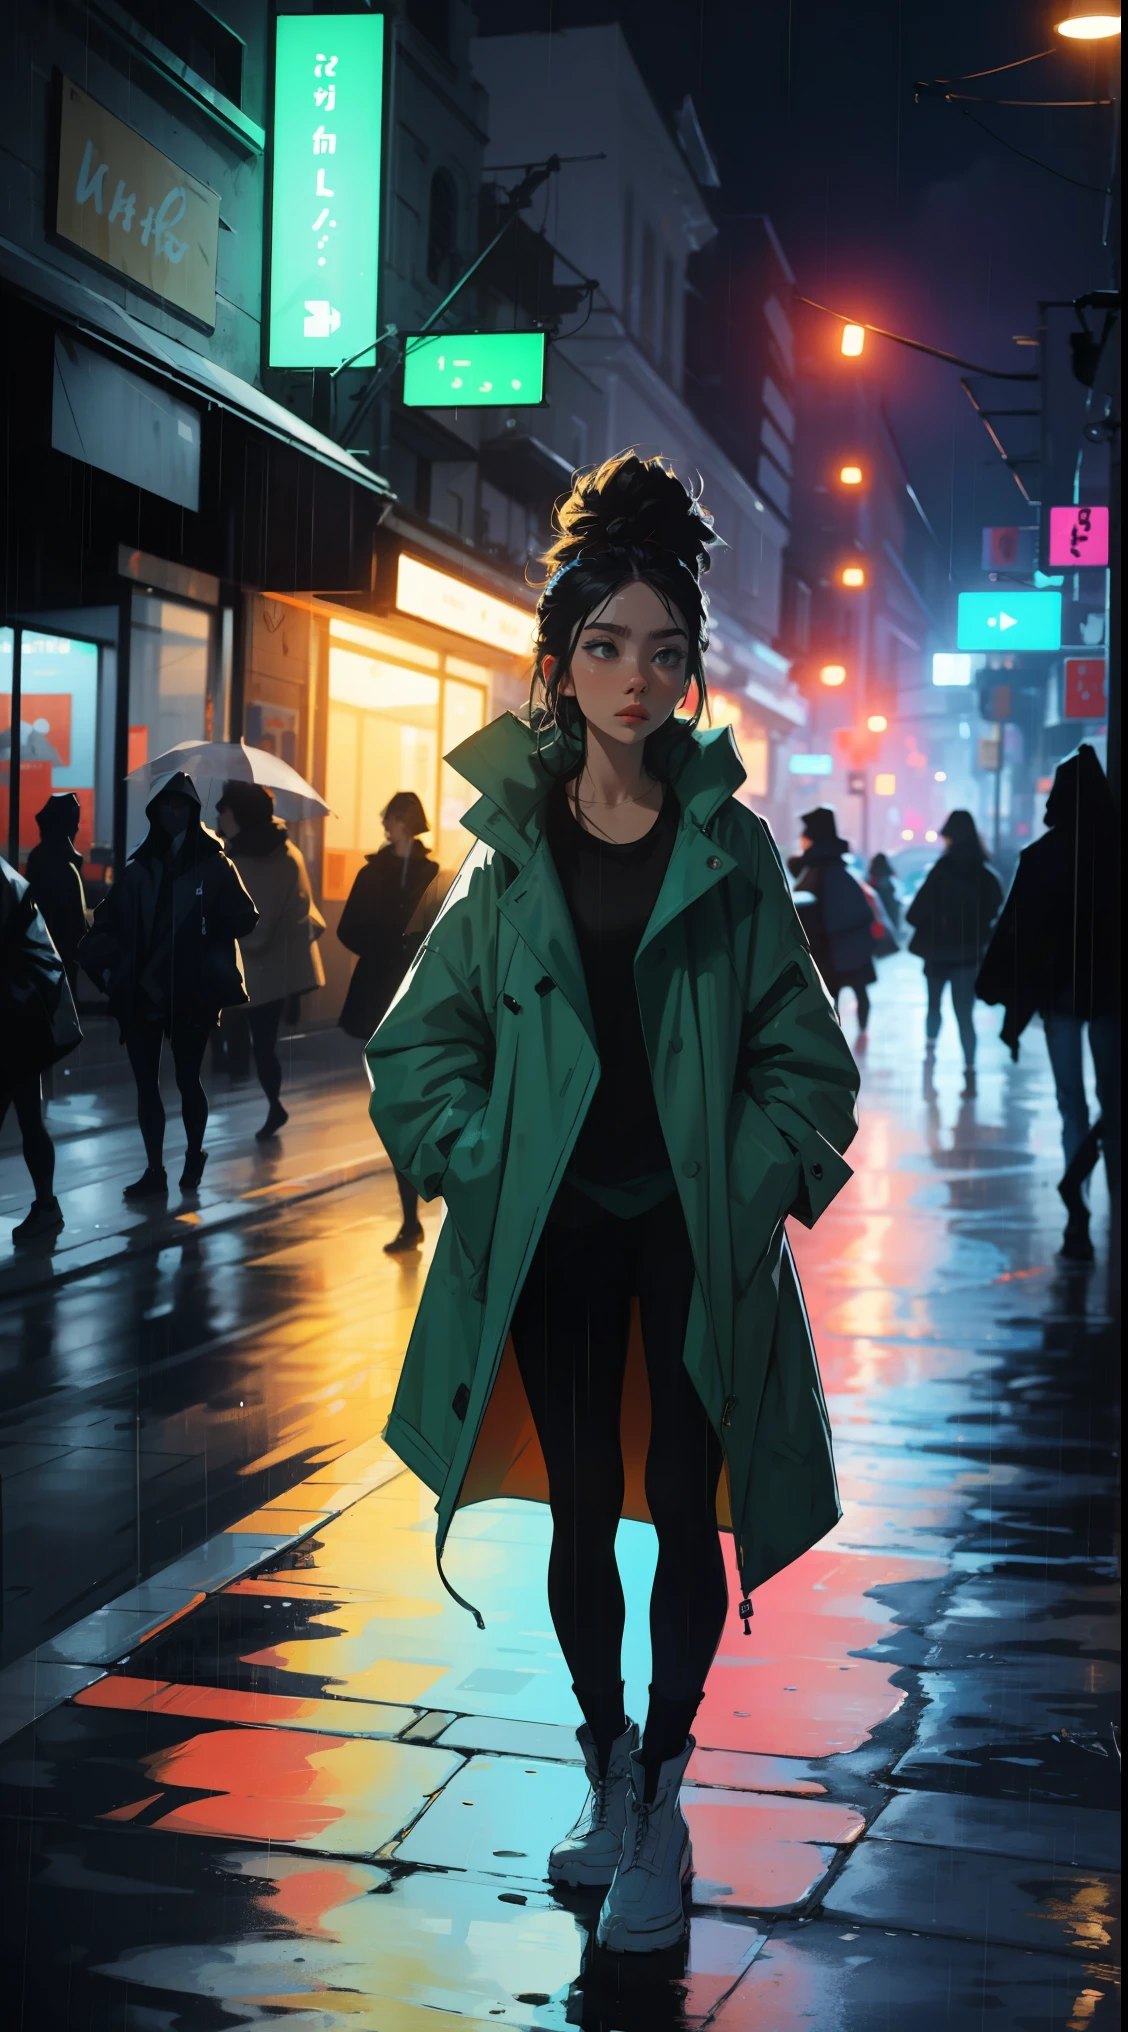 여자 1명,밤 도시,비,코트,주머니에 손, 네온, 빛 누출, 생생한 색상, 대담한 색상.